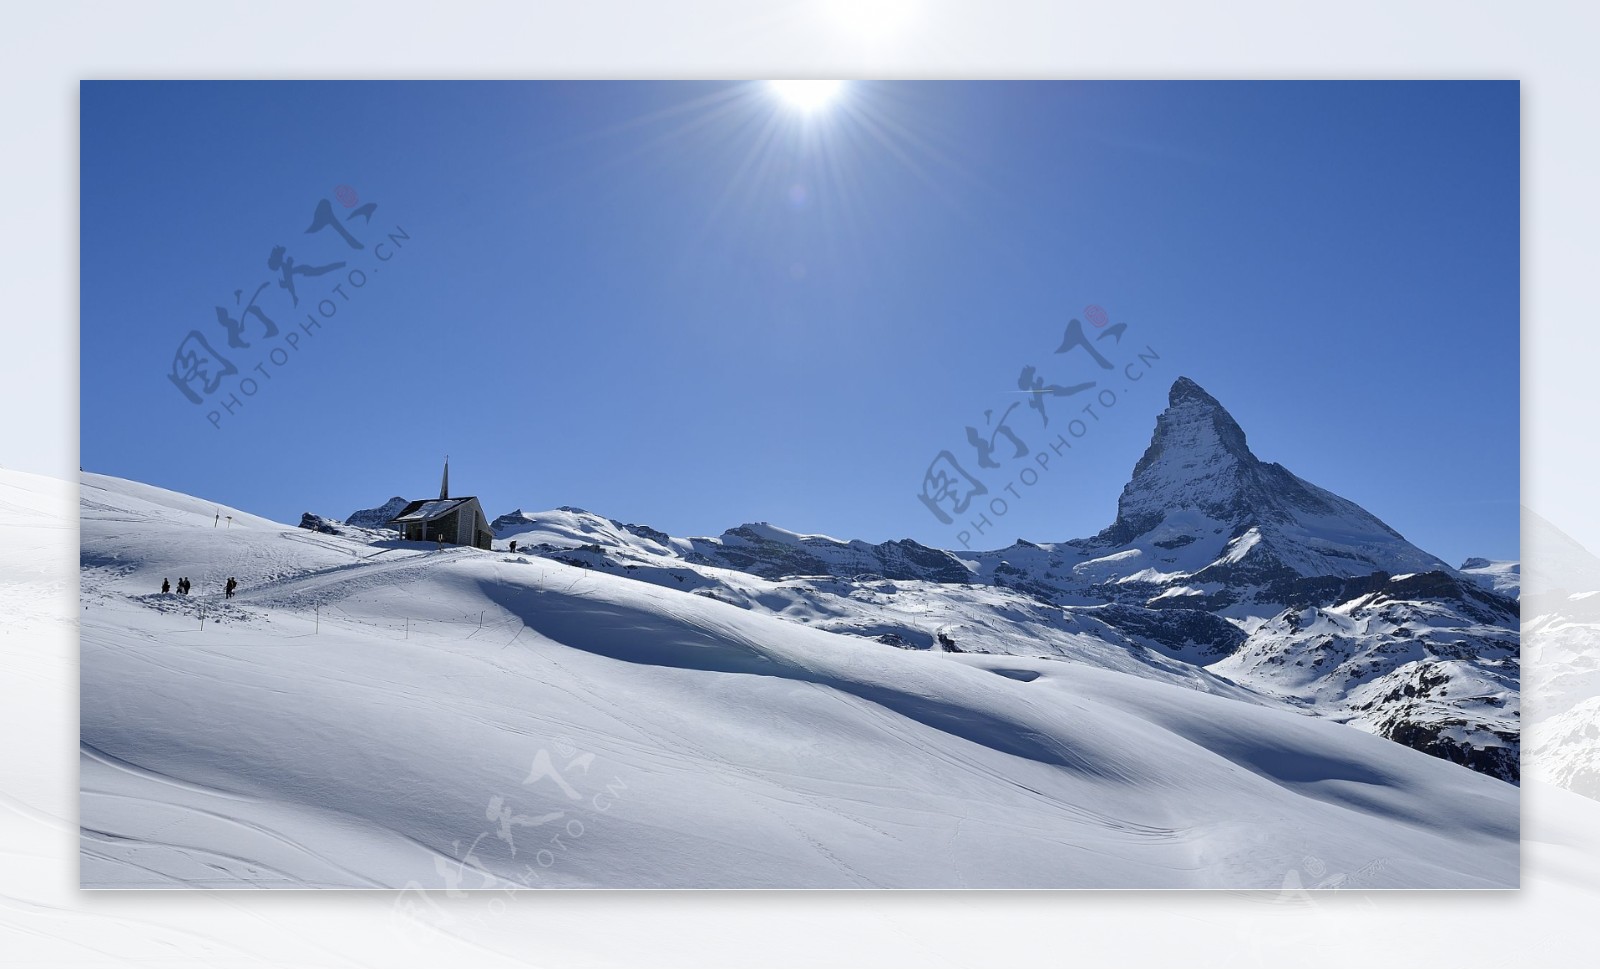 瑞士马特洪峰雪景